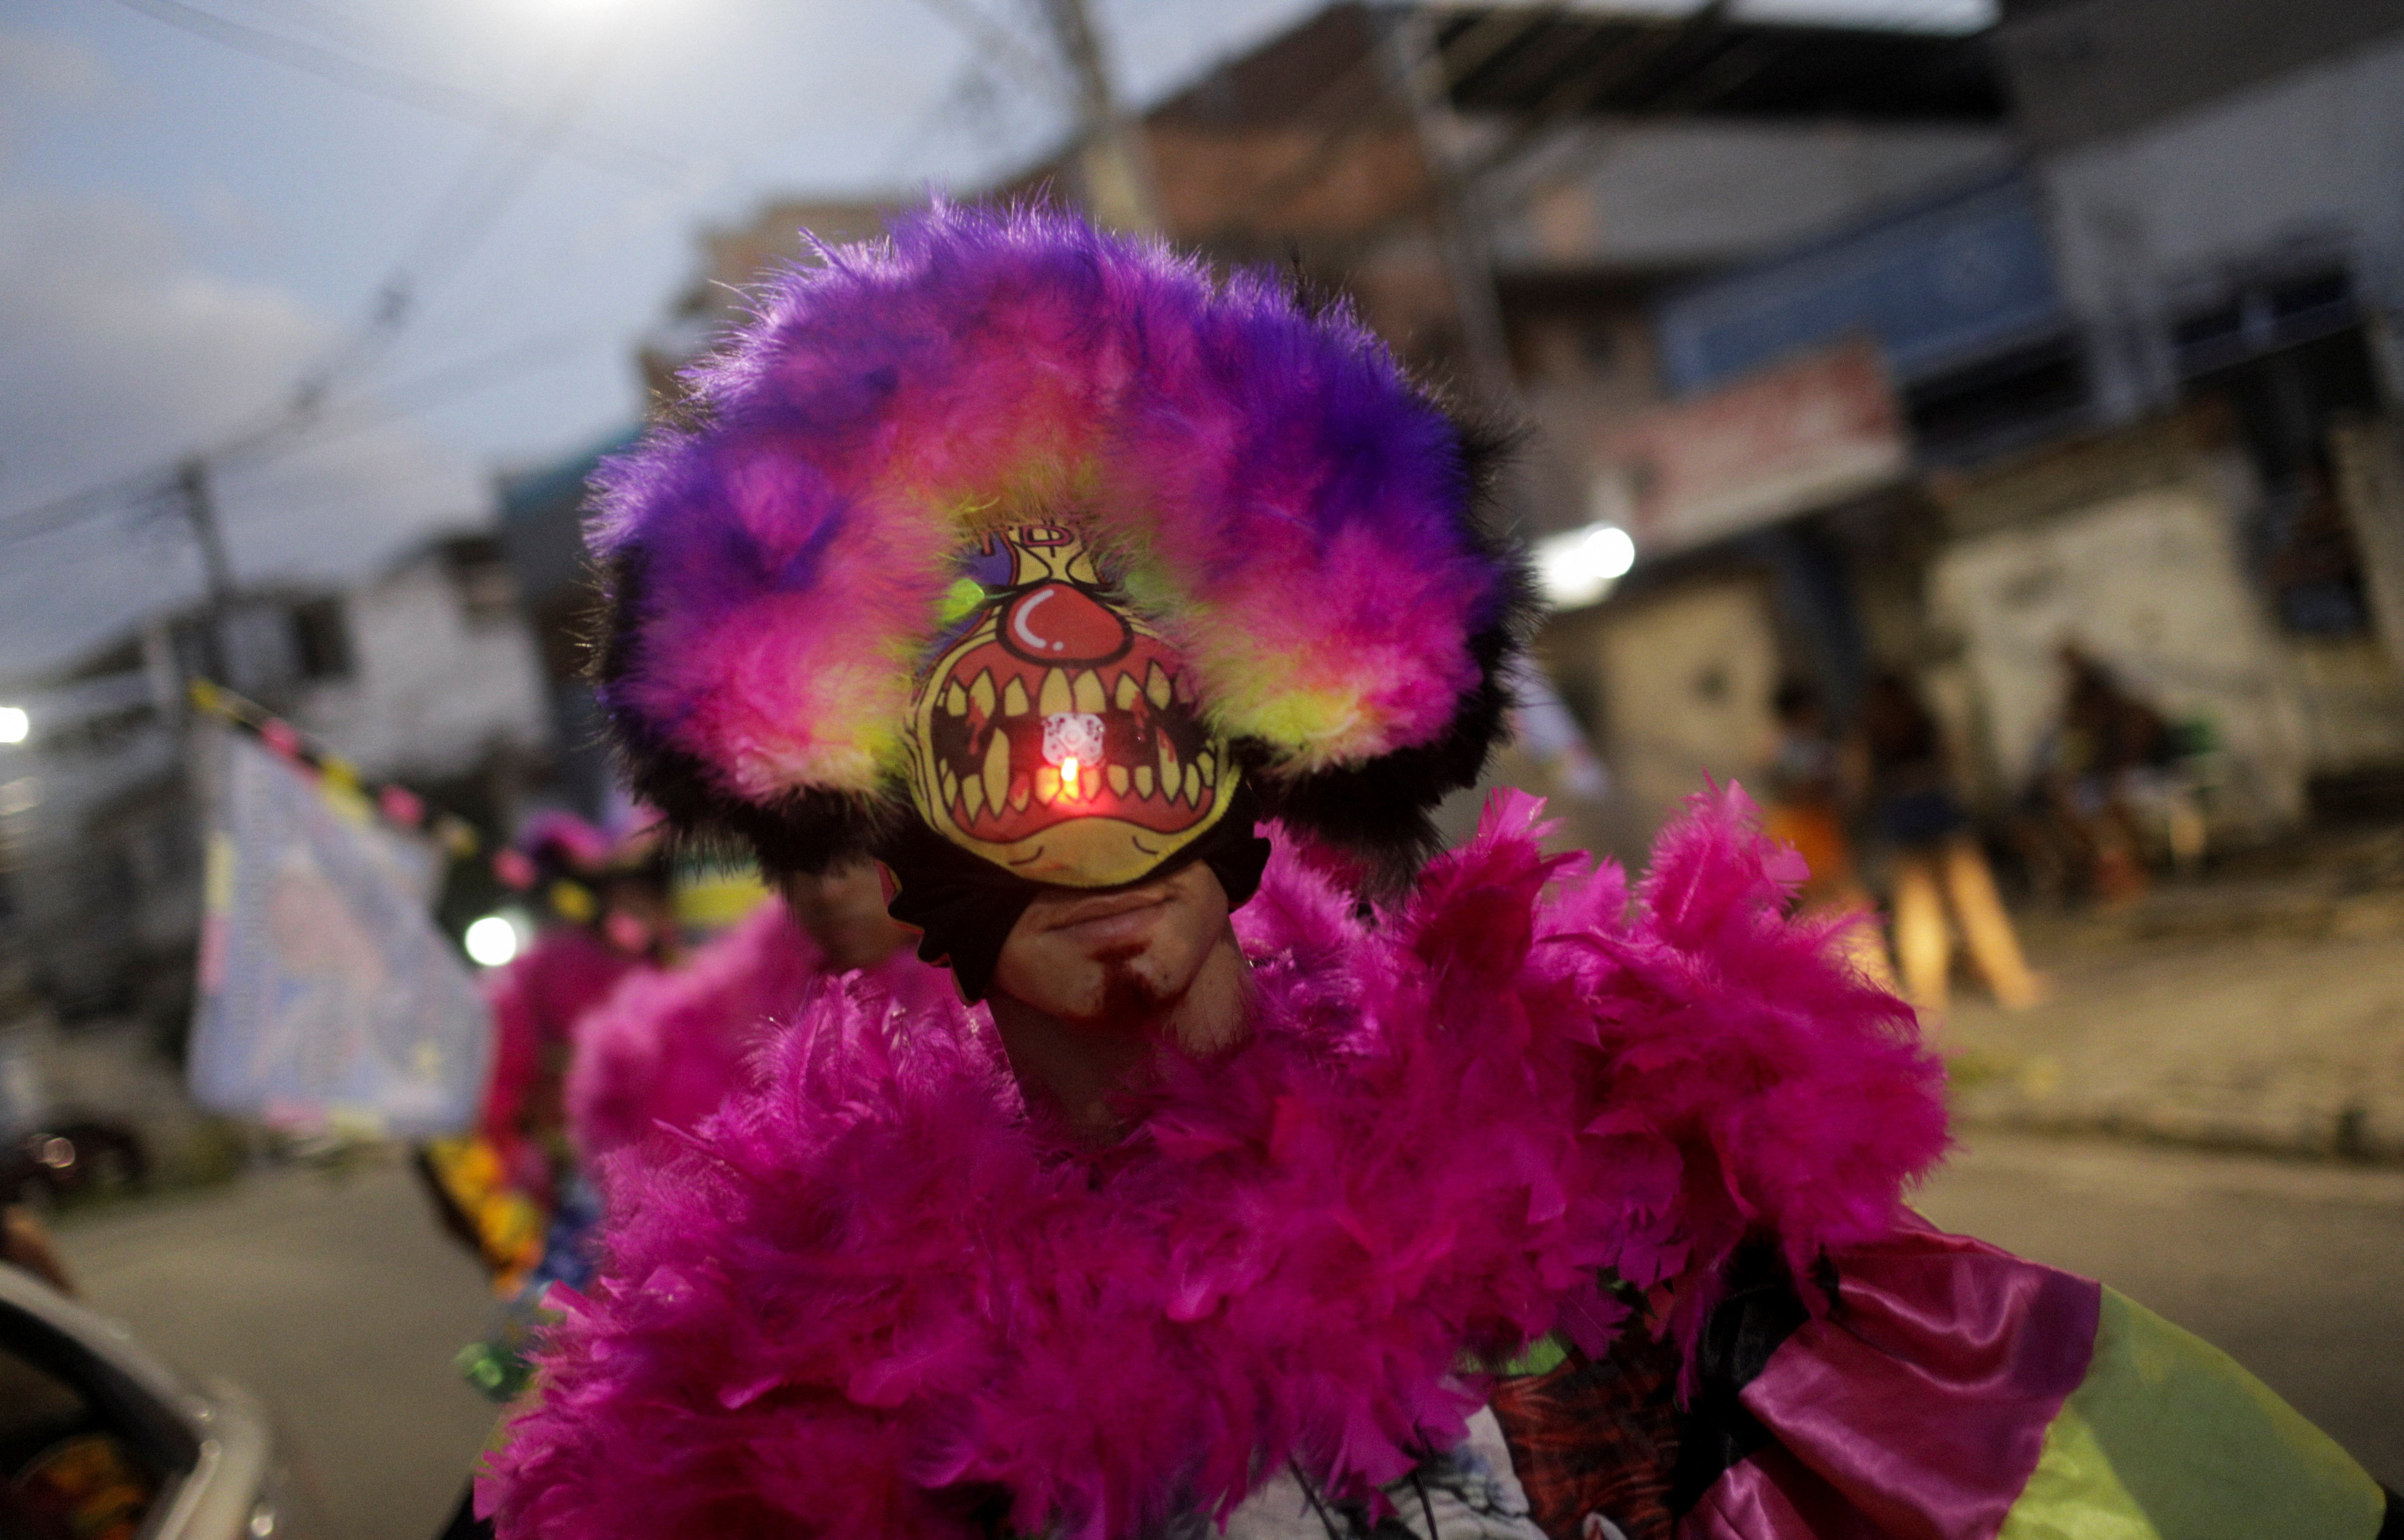 Rio de Janeiro postpones world-famous carnival over Covid-19